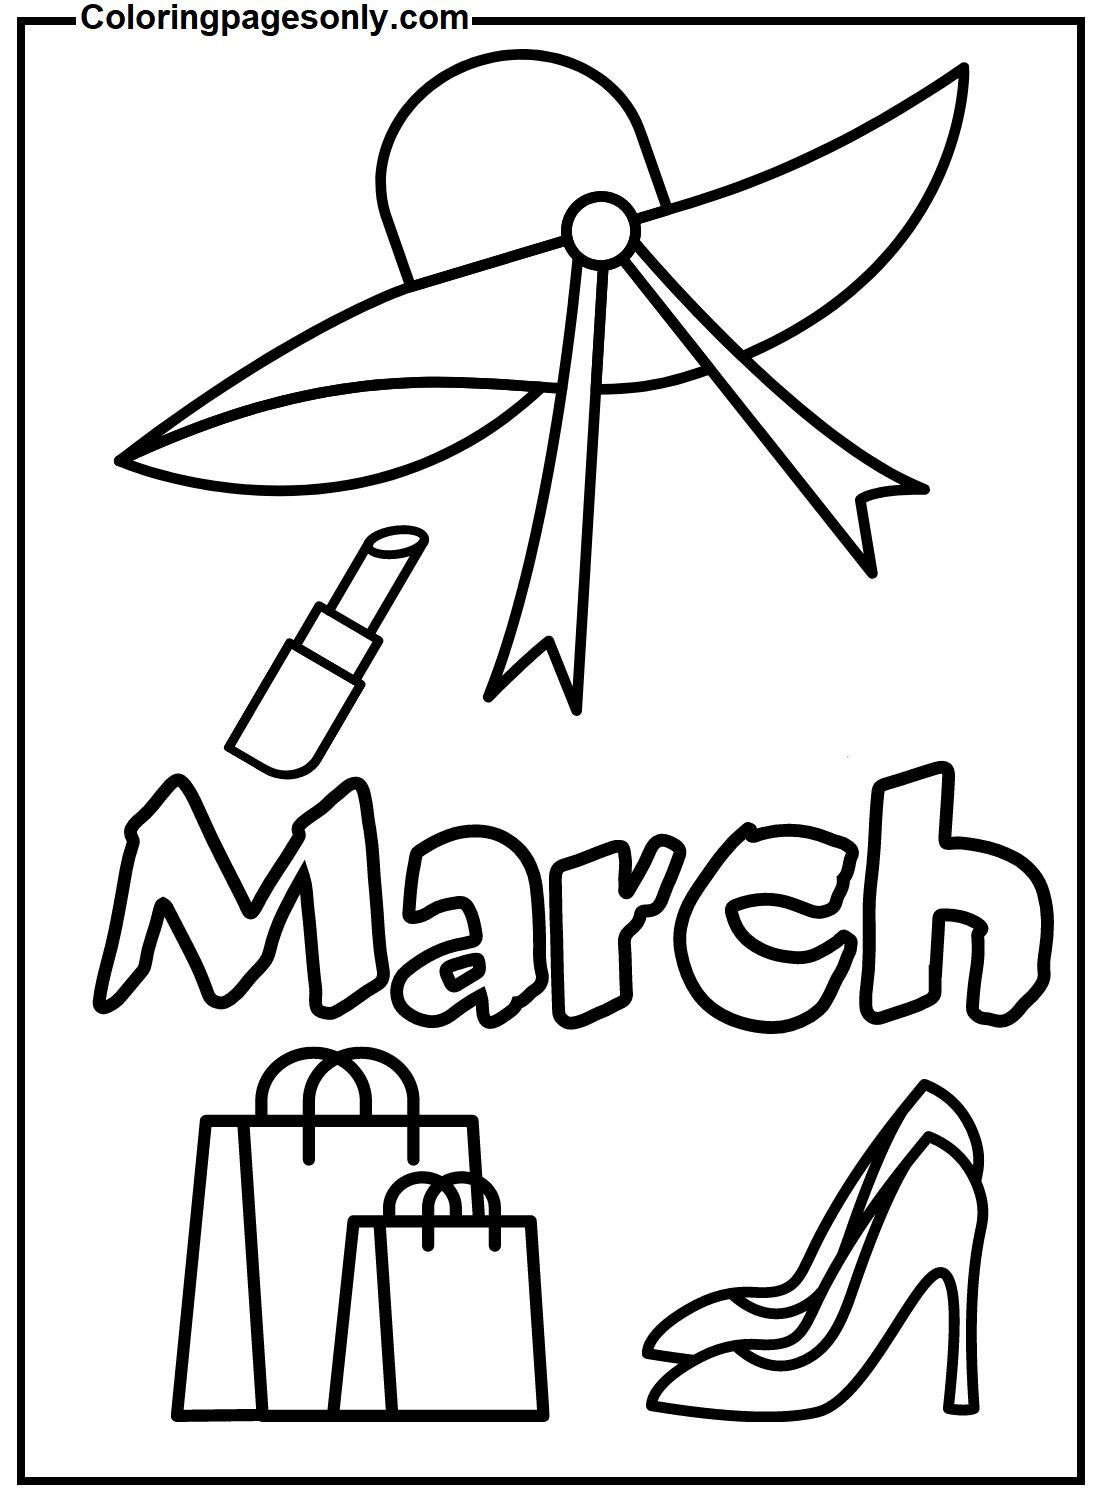 Dibujo de mujeres del mes de marzo para colorear